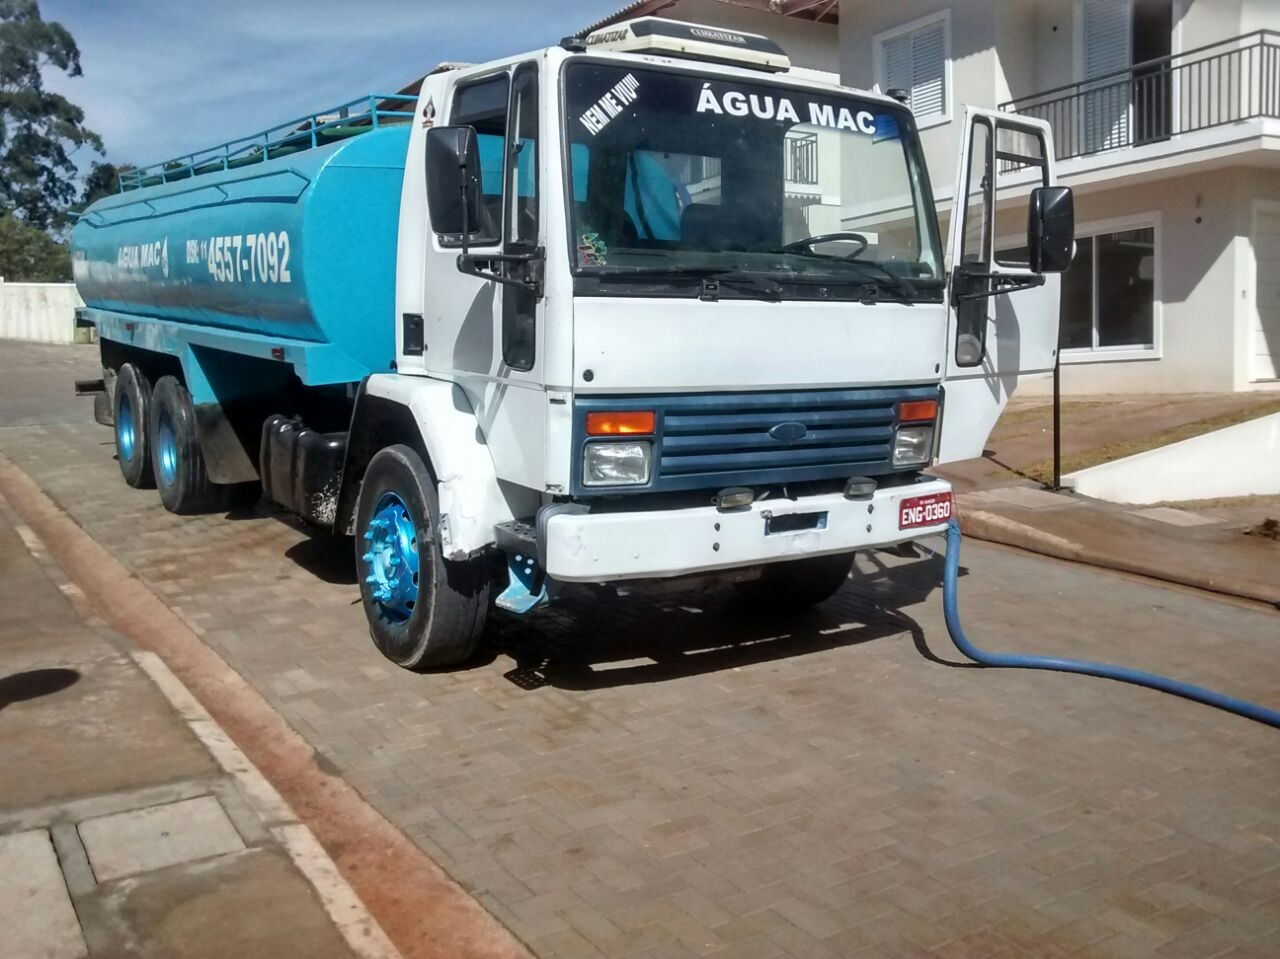 Transporte de água Potável para Empresas